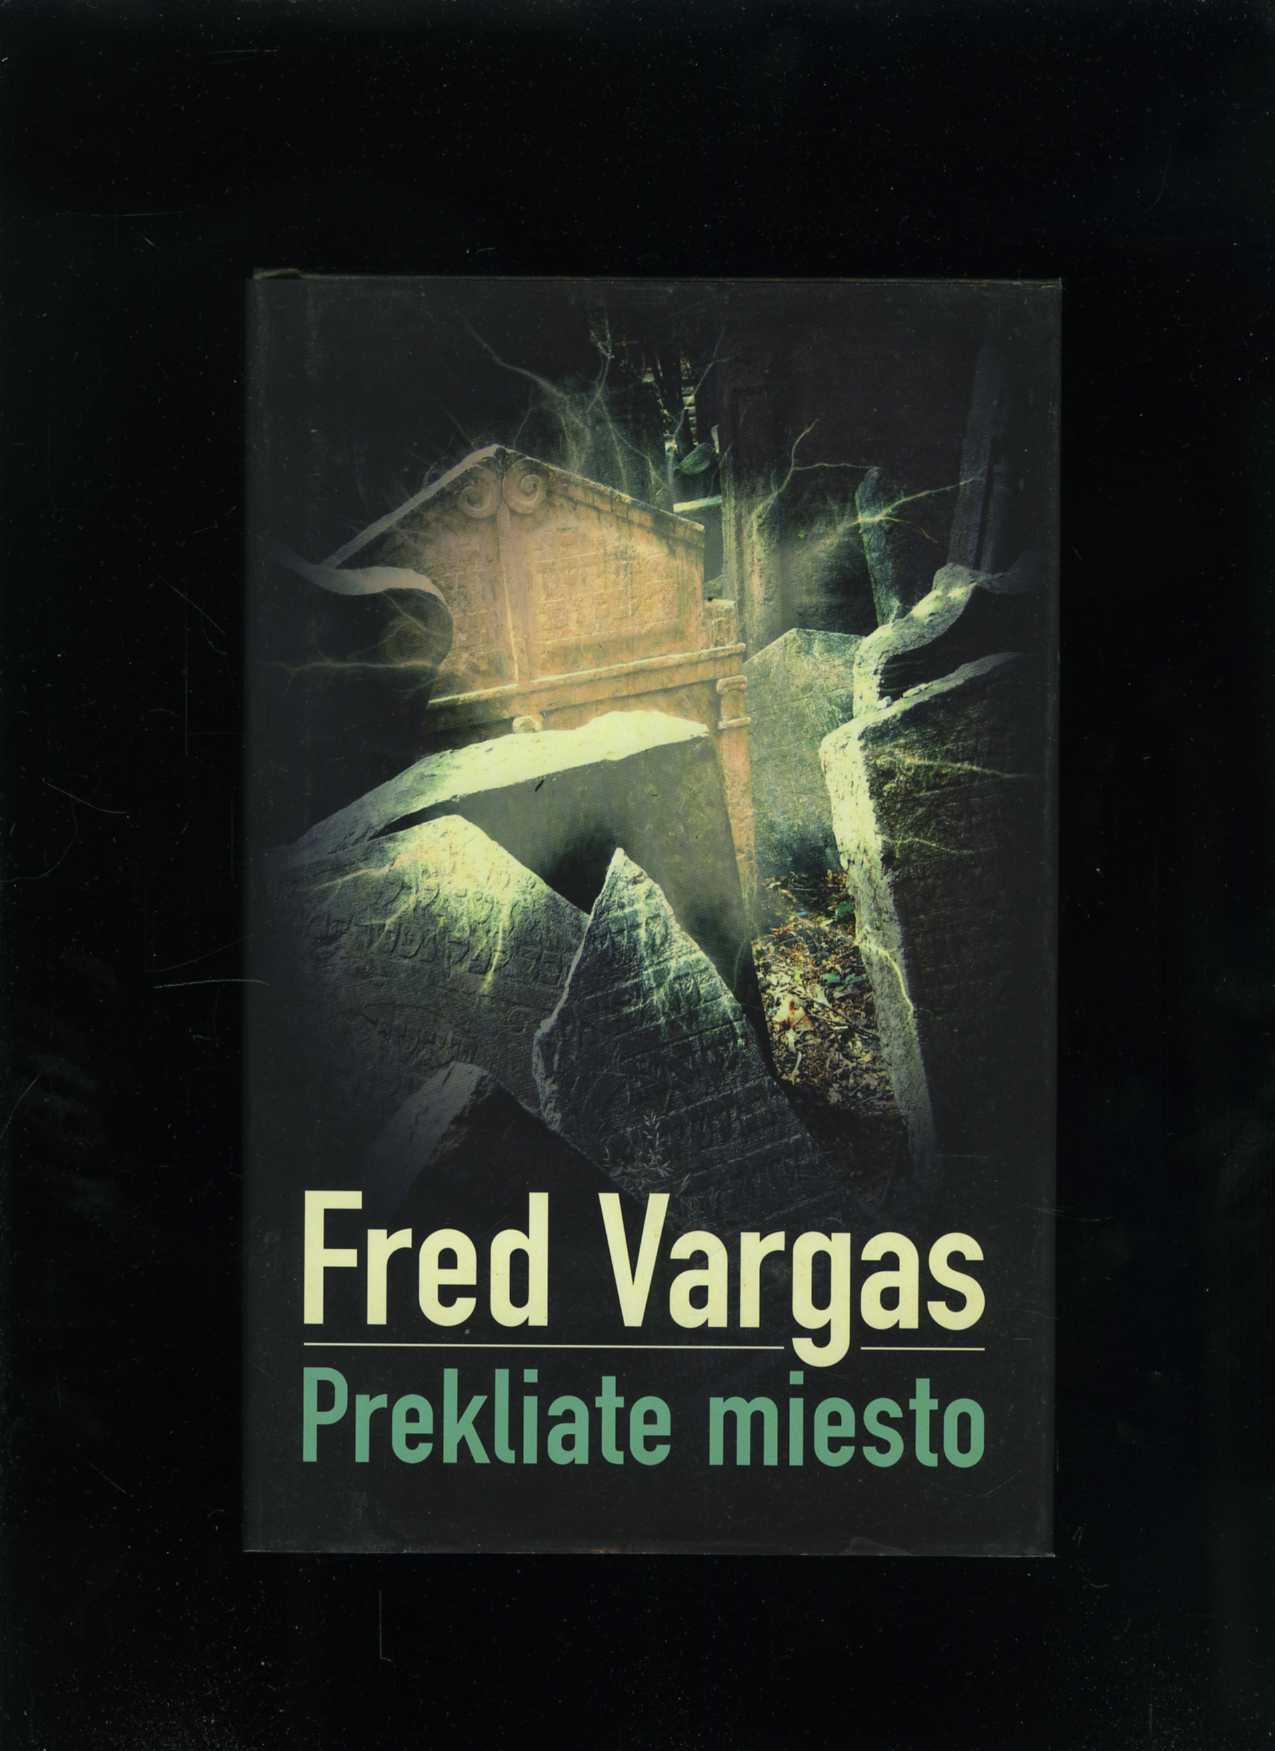 Prekliate miesto (Fred Vargas)